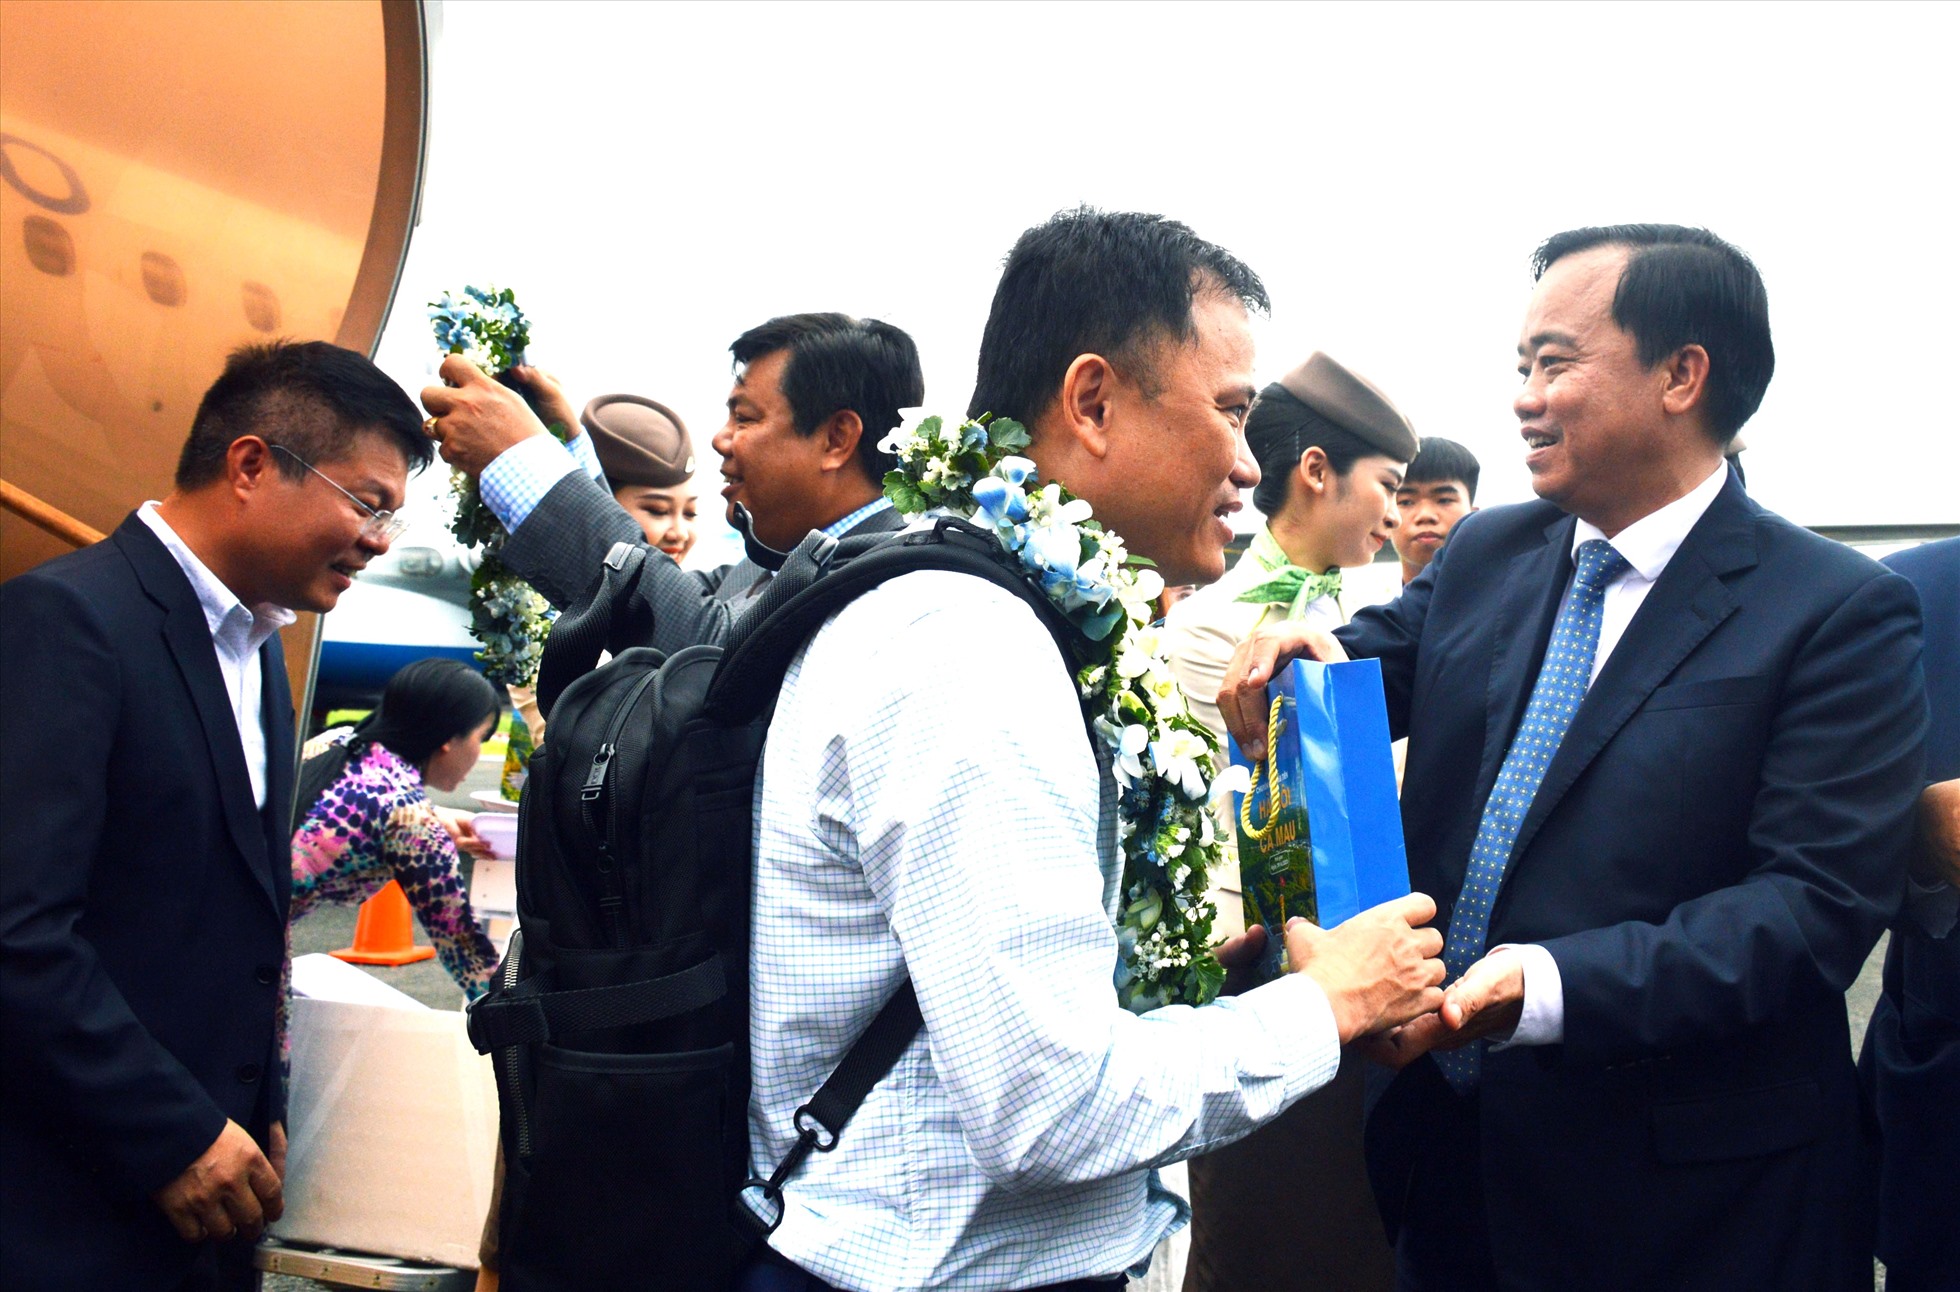 Chủ tịch UBND tỉnh Cà Mau Huỳnh Quốc Việt đón những vị khách đầu tiên trong chuyến bay thẳng Hà Nội - Cà Mau tại Cảng hàng không Cà Mau. Ảnh: Nhật Hồ